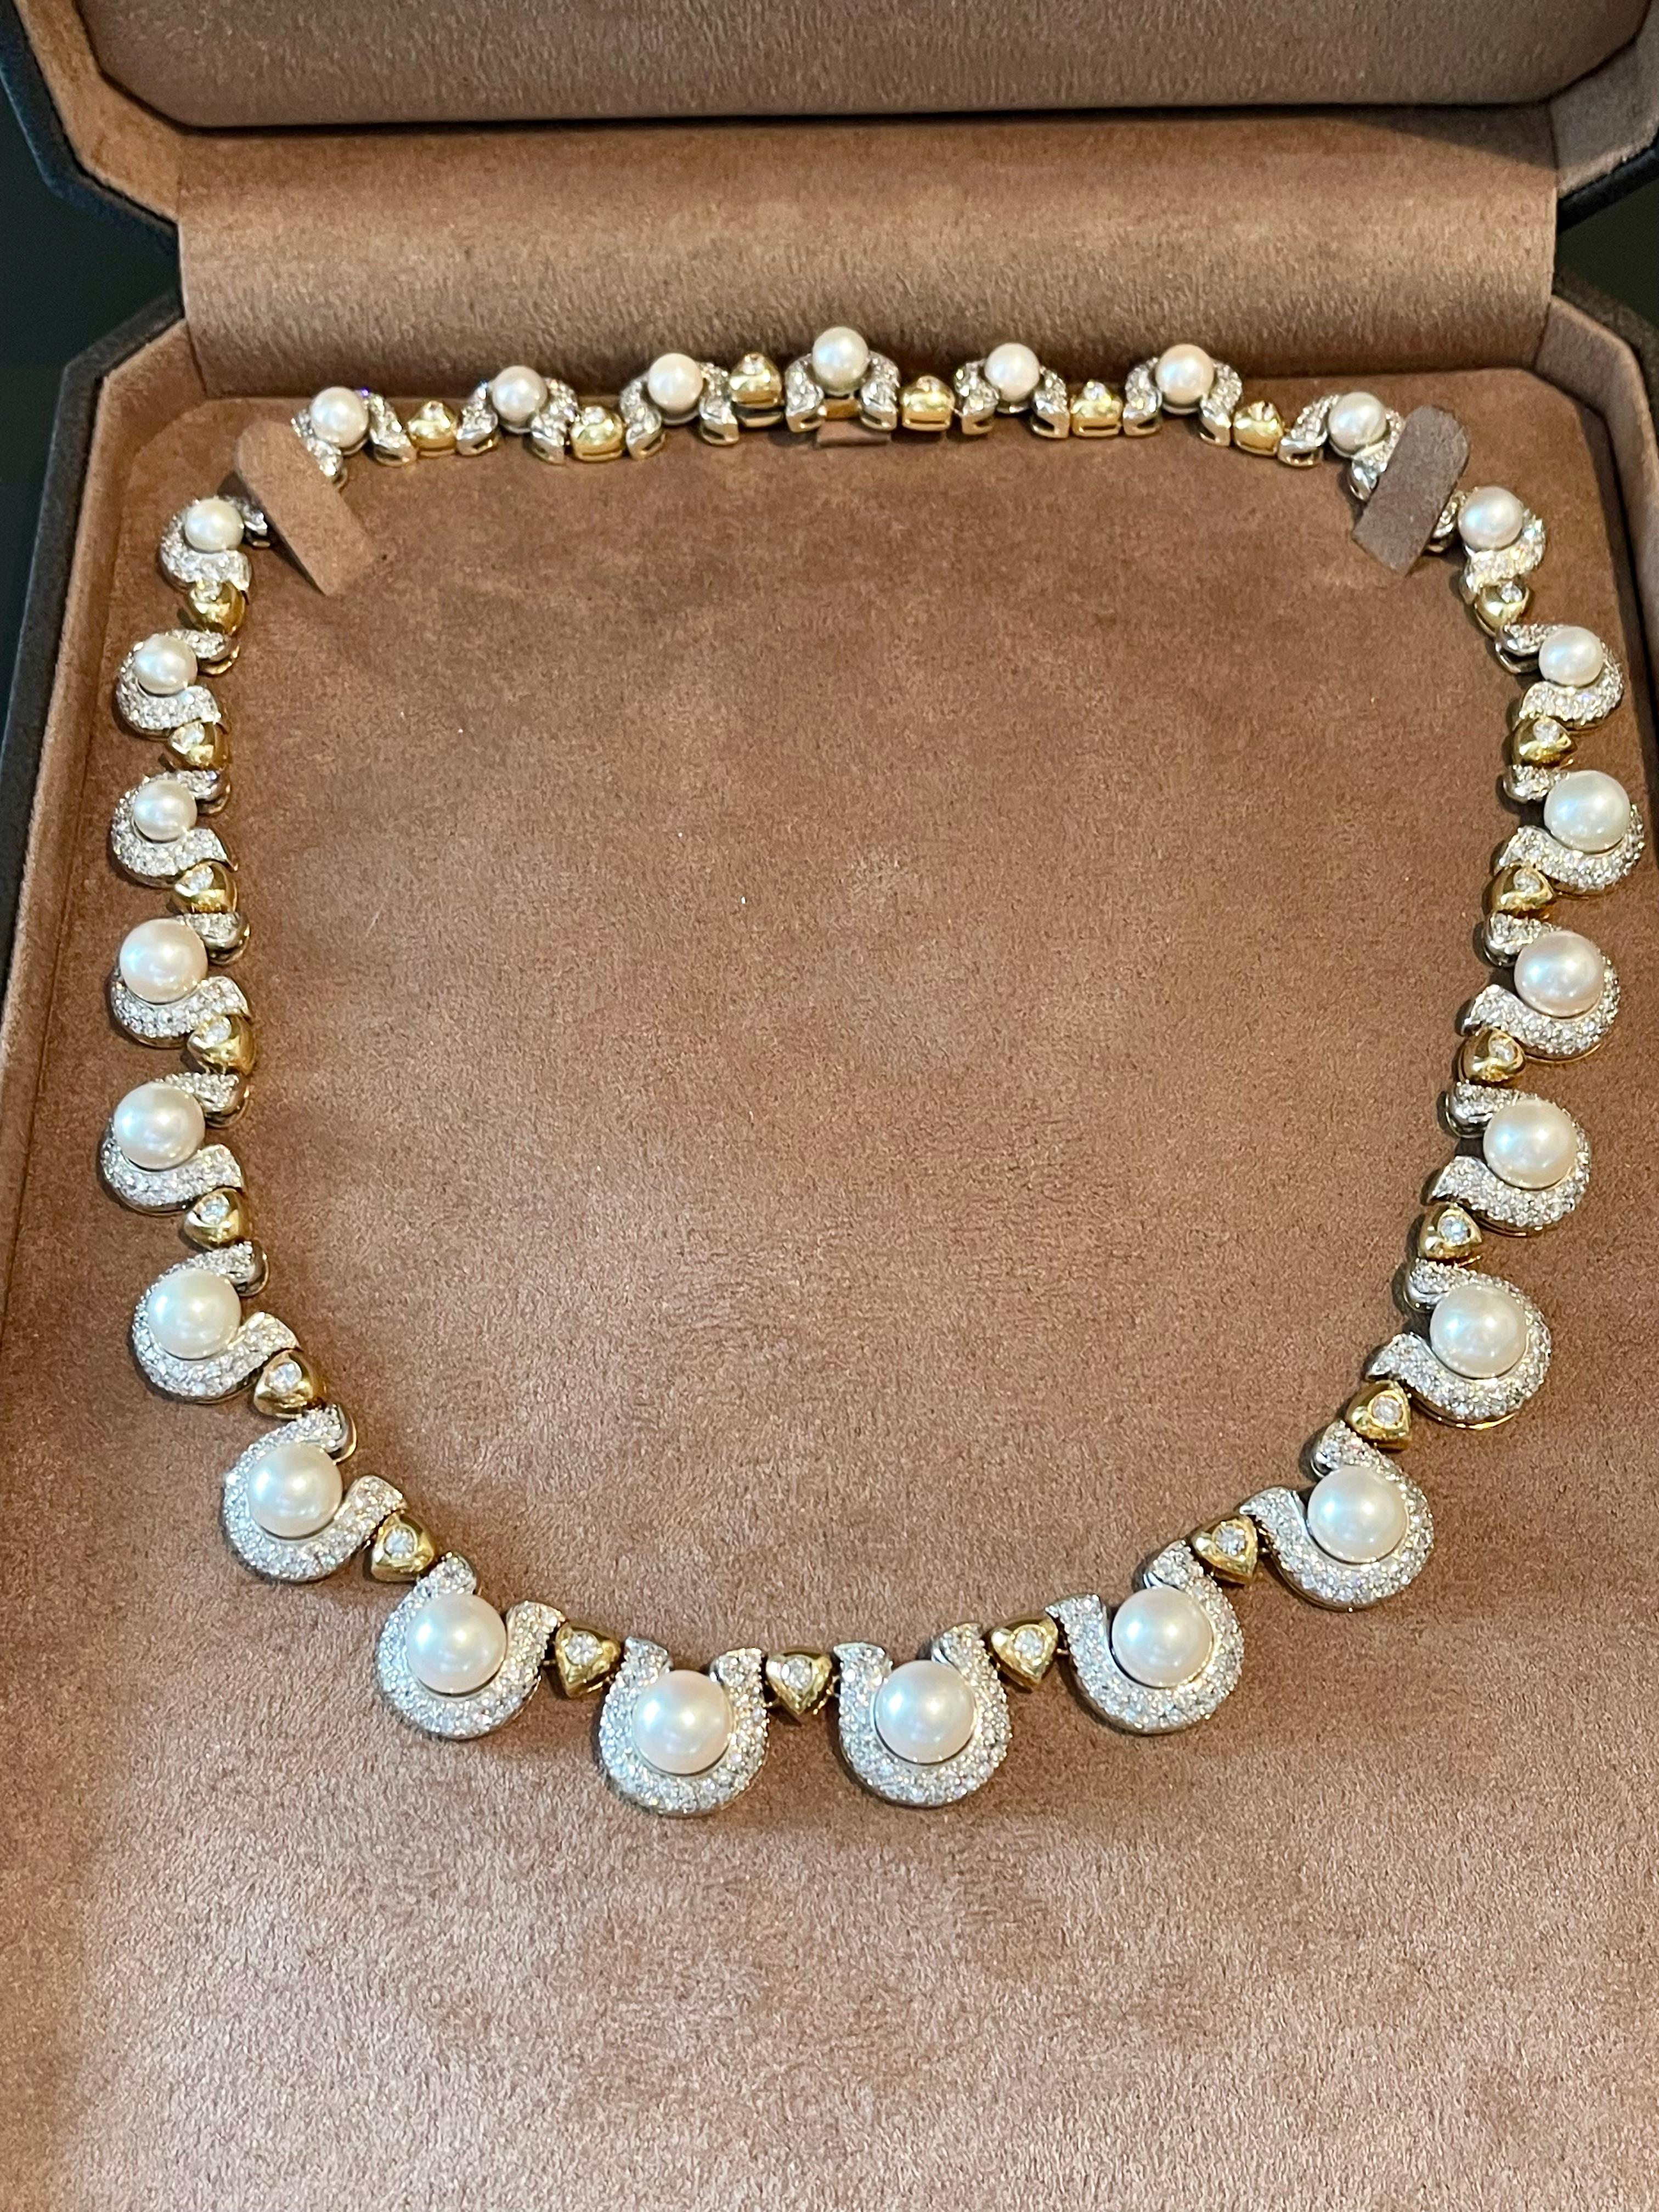 Un collier très élégant et portable en or jaune et blanc 18, fabriqué en Italie. Le collier comporte 25 perles de culture (6,2 mm - 8,50 mm) et est orné de diamants d'environ 6,70 ct. 
Un bijou intemporel magnifique et très facile à porter.
Longueur